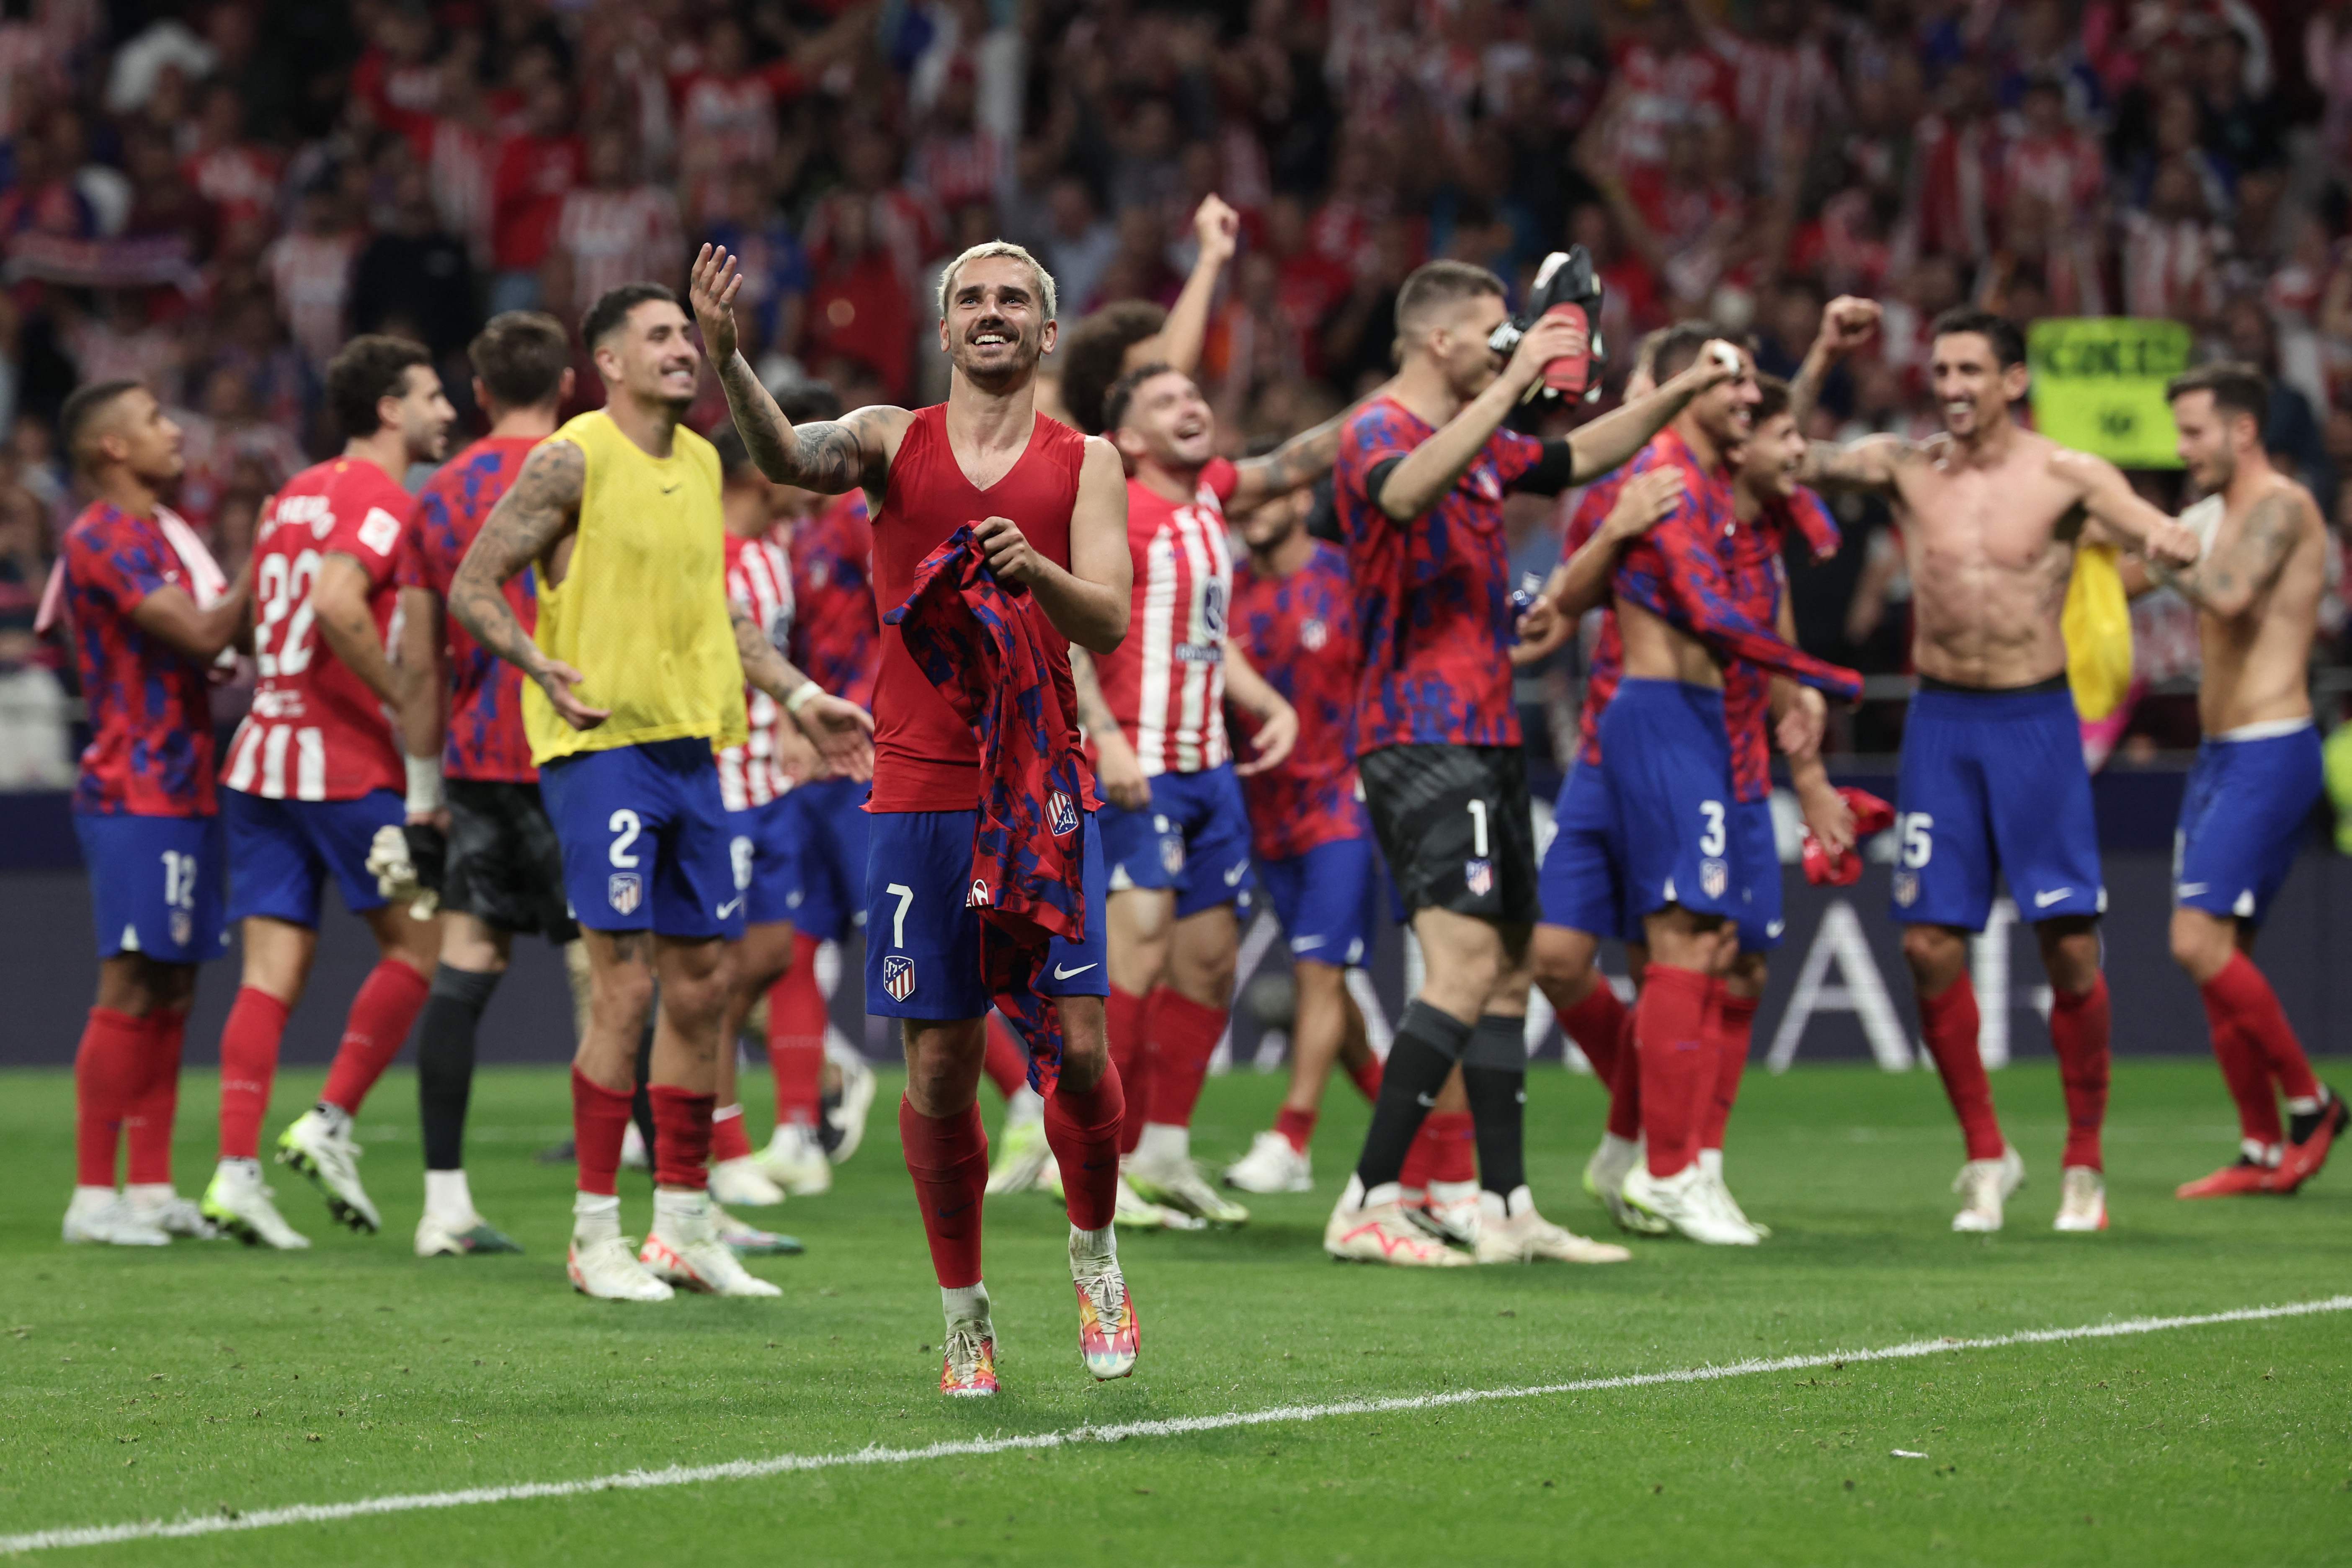 El delantero del Atlético de Madrid, Antoine Griezmann celebra junto a sus compañeros la victoria ante el Real Madrid CF. (Foto Prensa Libre: AFP)